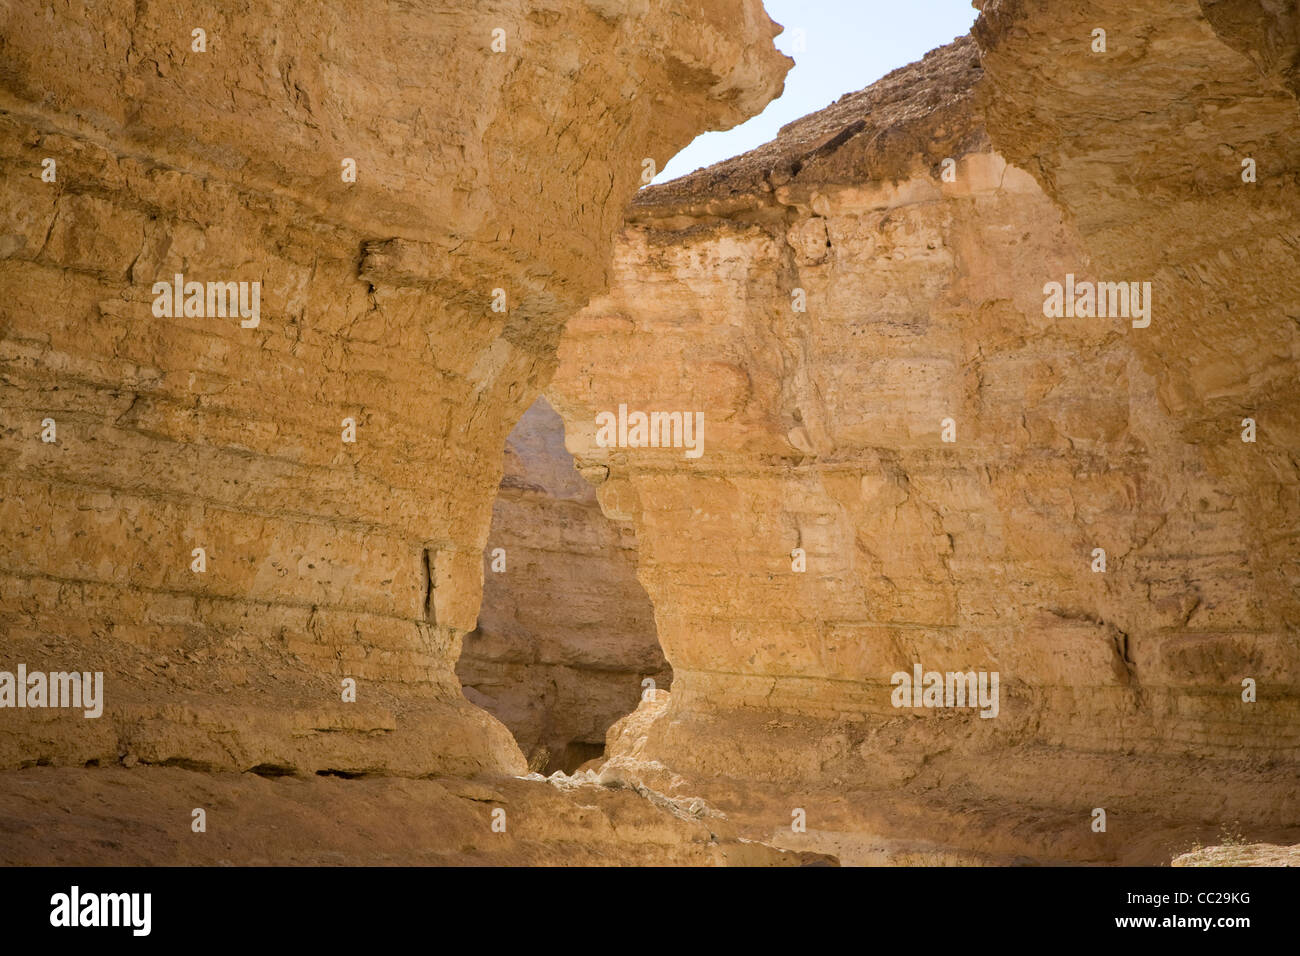 Gorge at Tamerza, Tunisia. Stock Photo